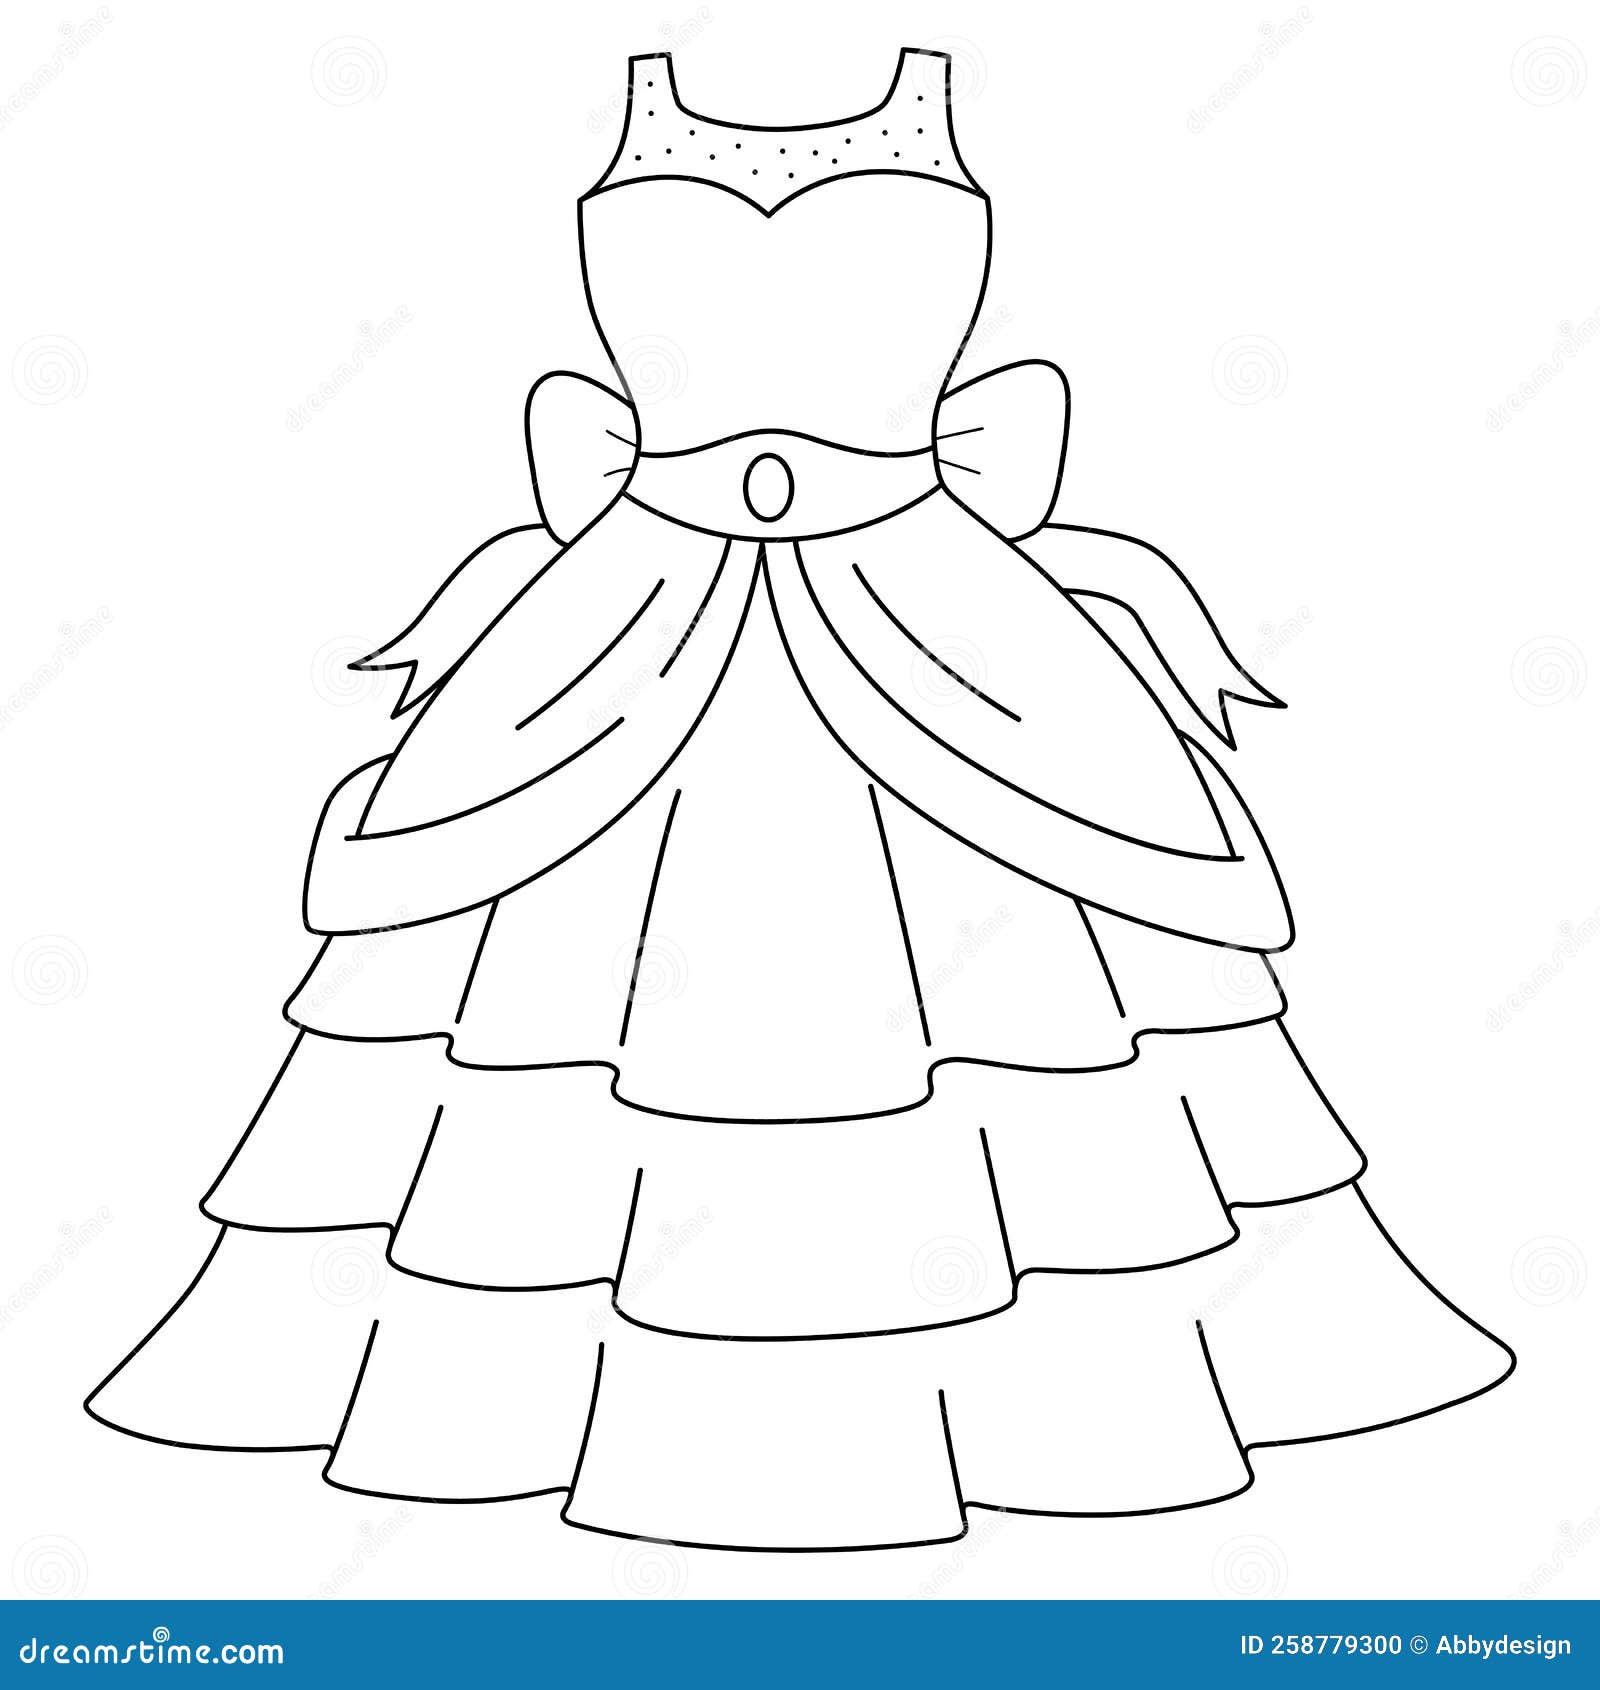 Desenho de vestido de noiva antigo para colorir